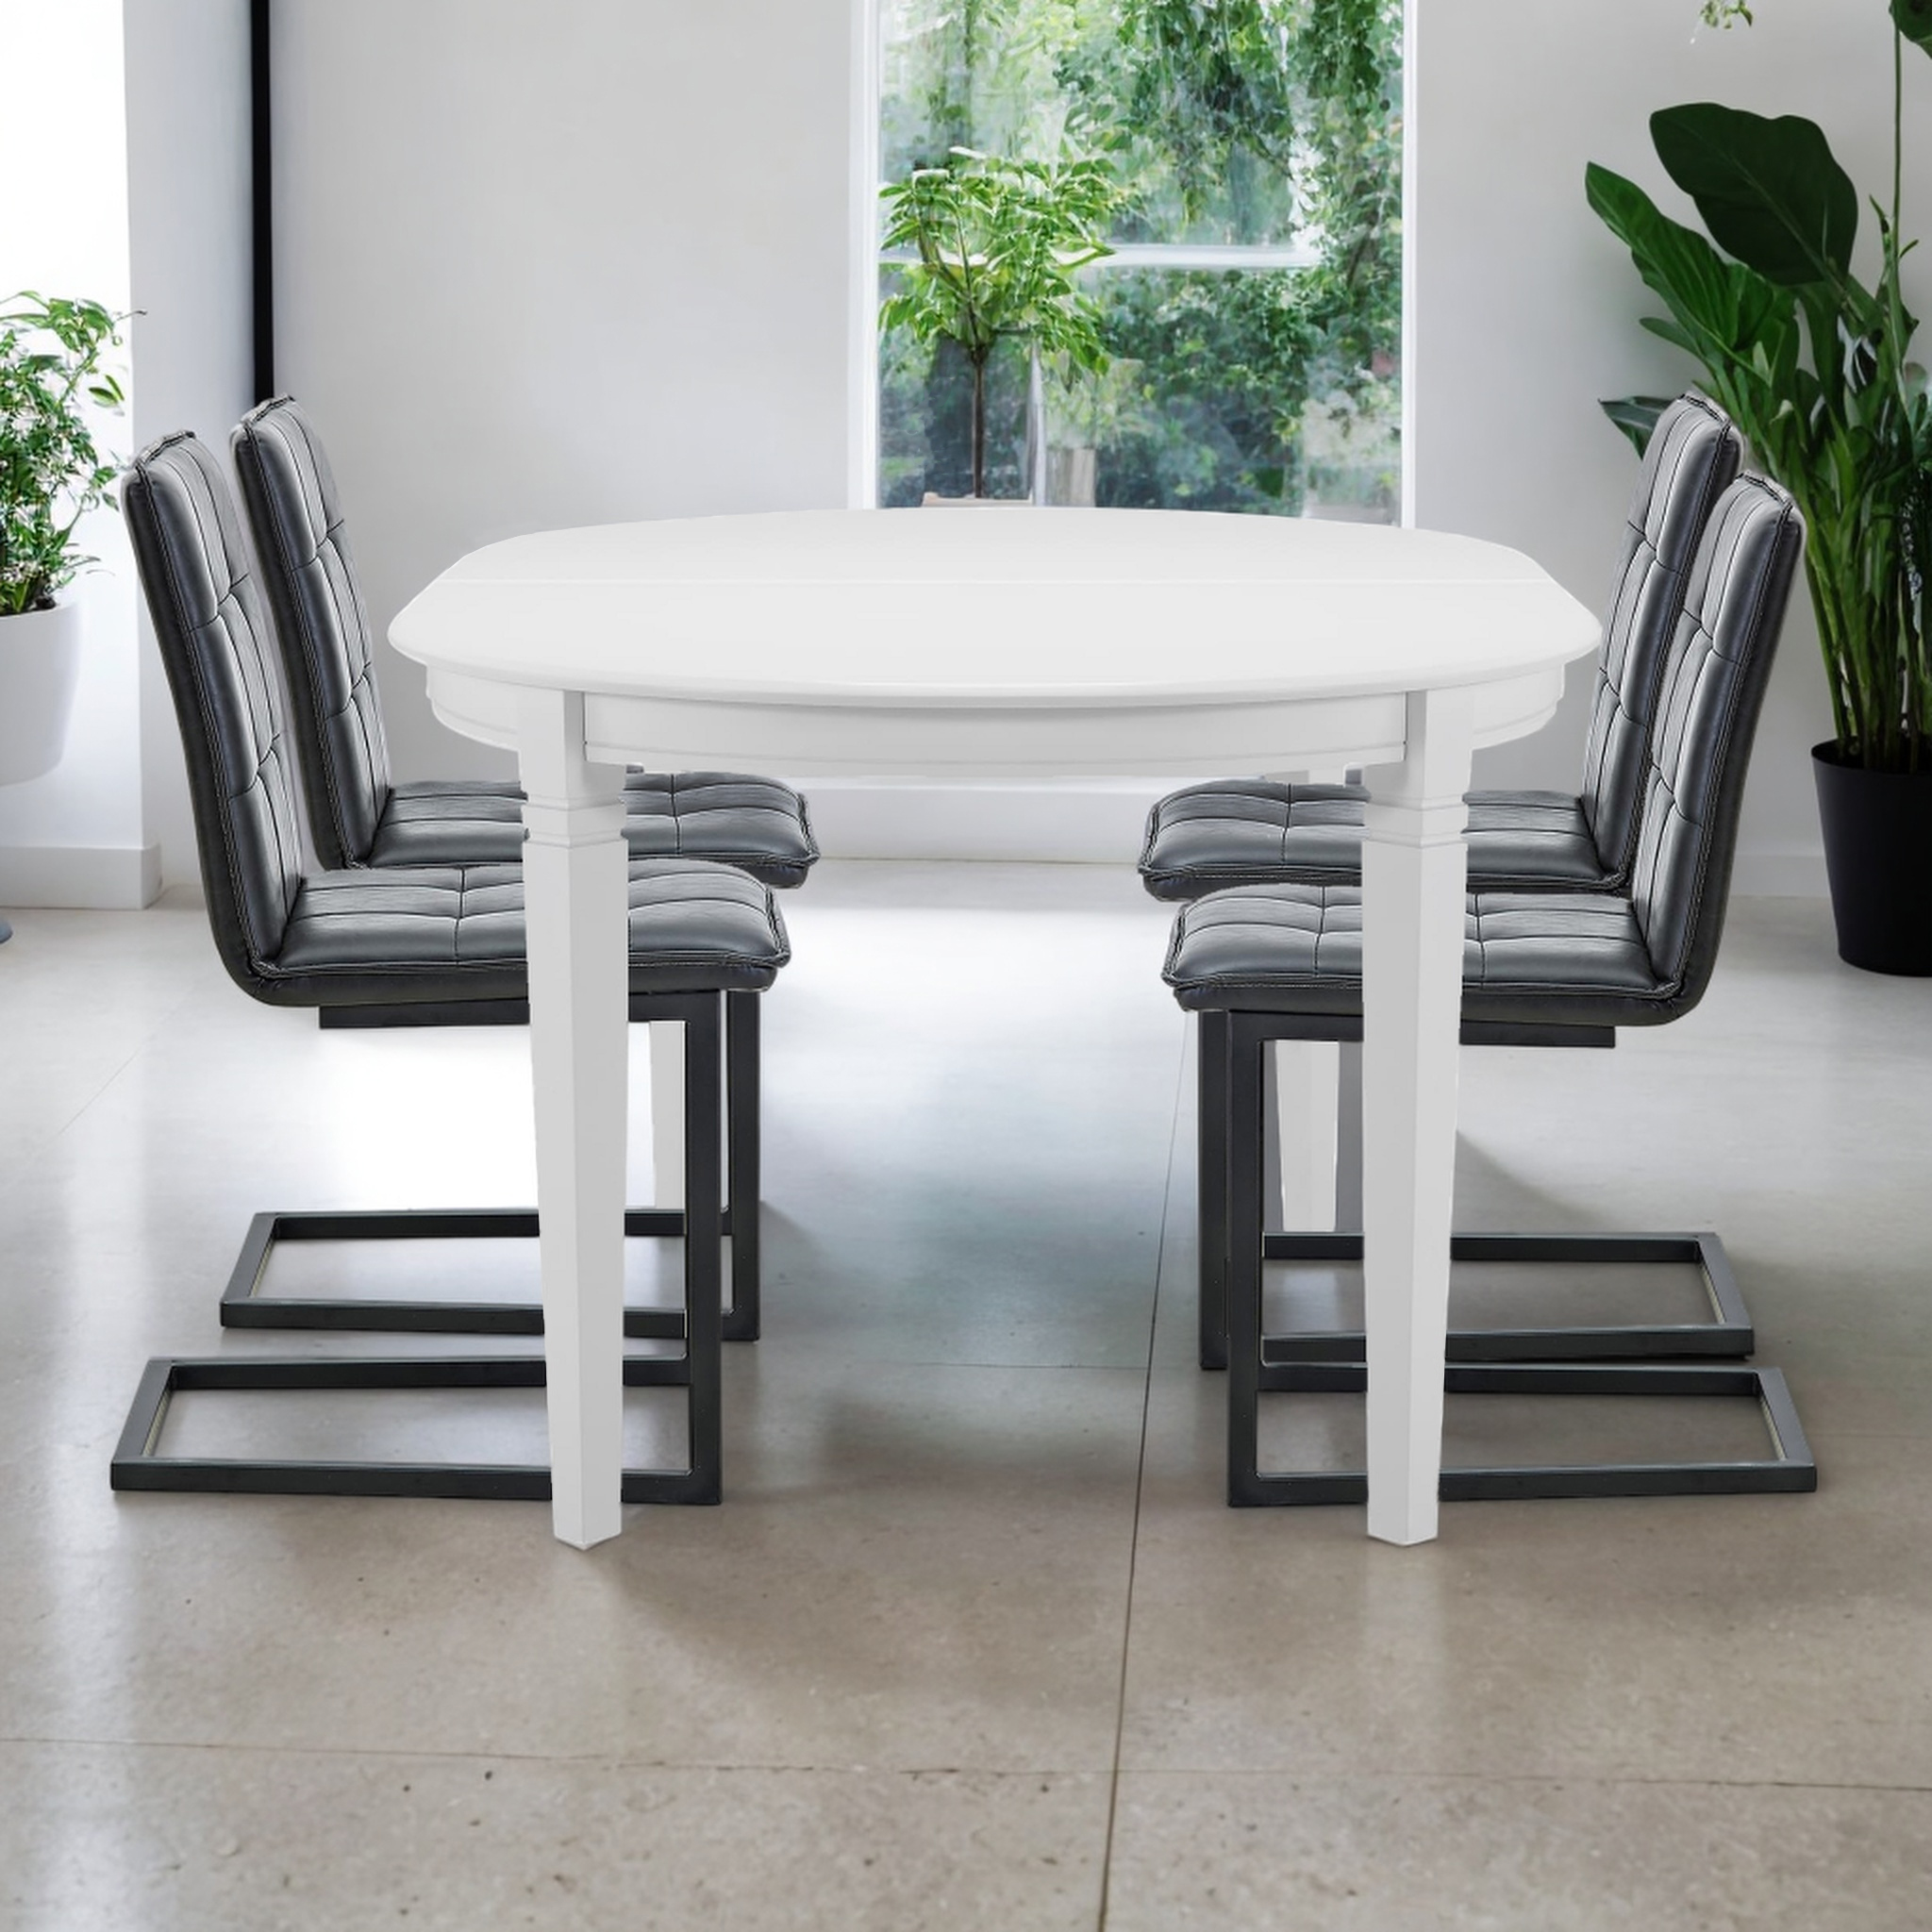 Förlängningsbart matbord med 4 stolar | Svalöv